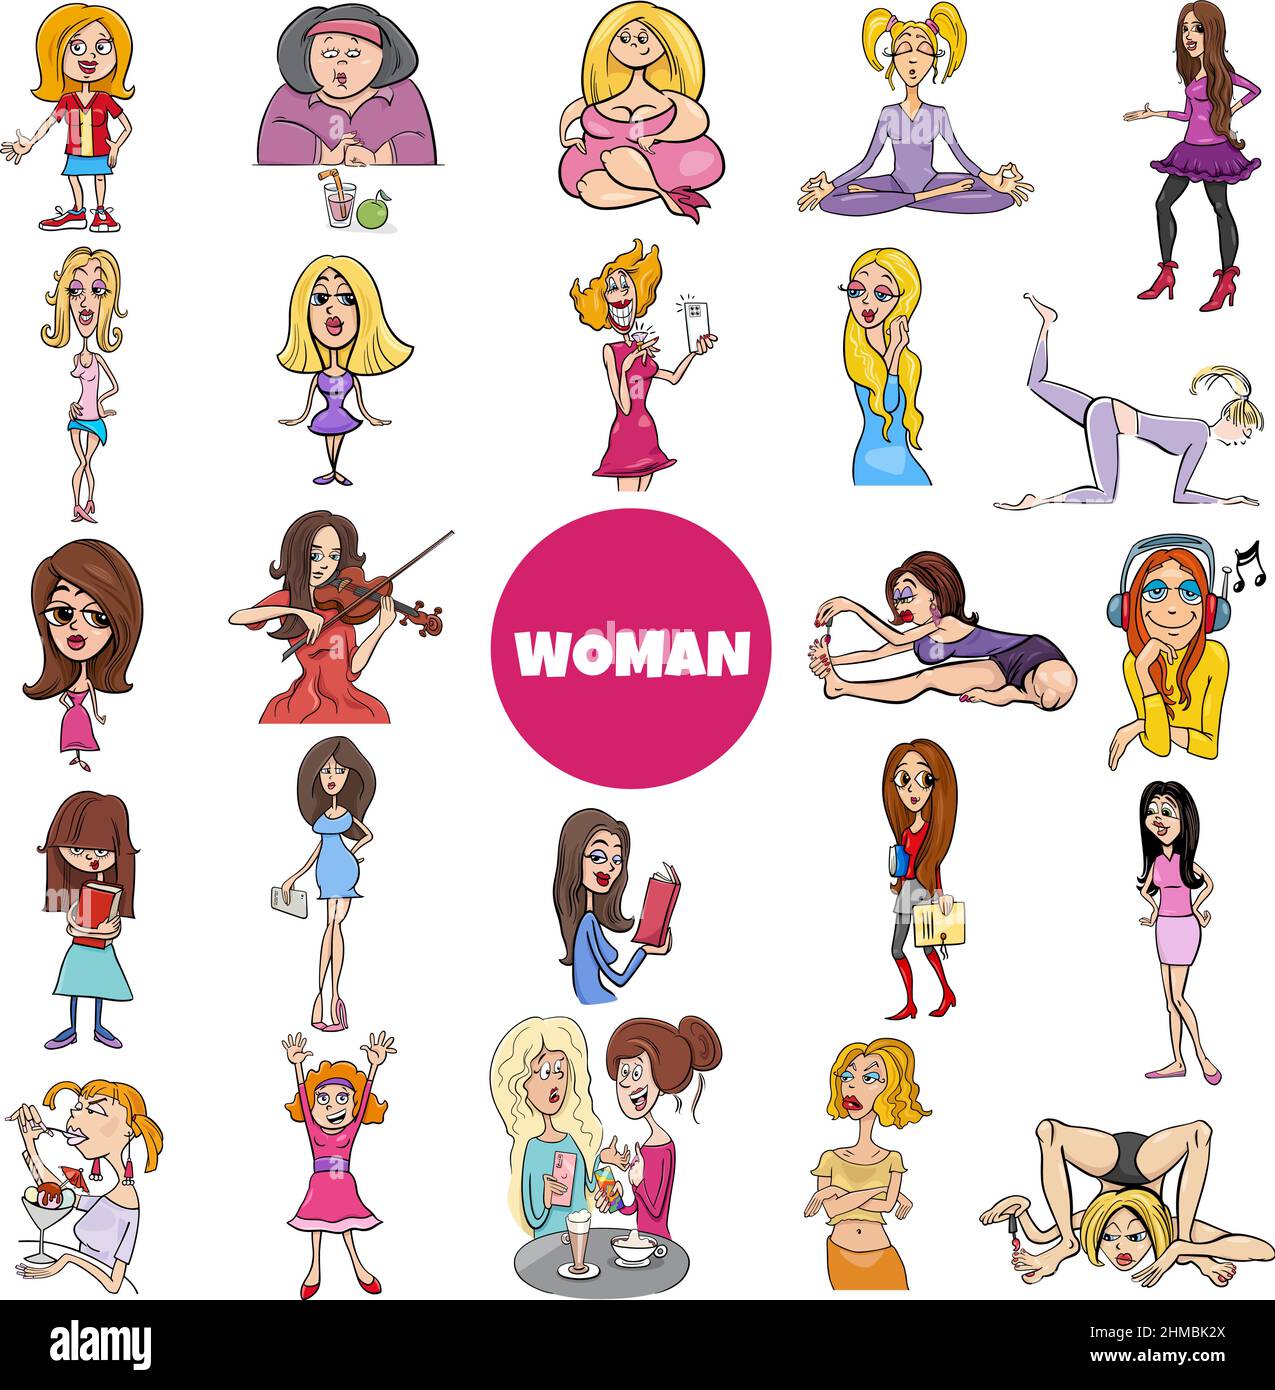 Illustrazione di cartoni animati di personaggi donne e ragazze grande set  Immagine e Vettoriale - Alamy